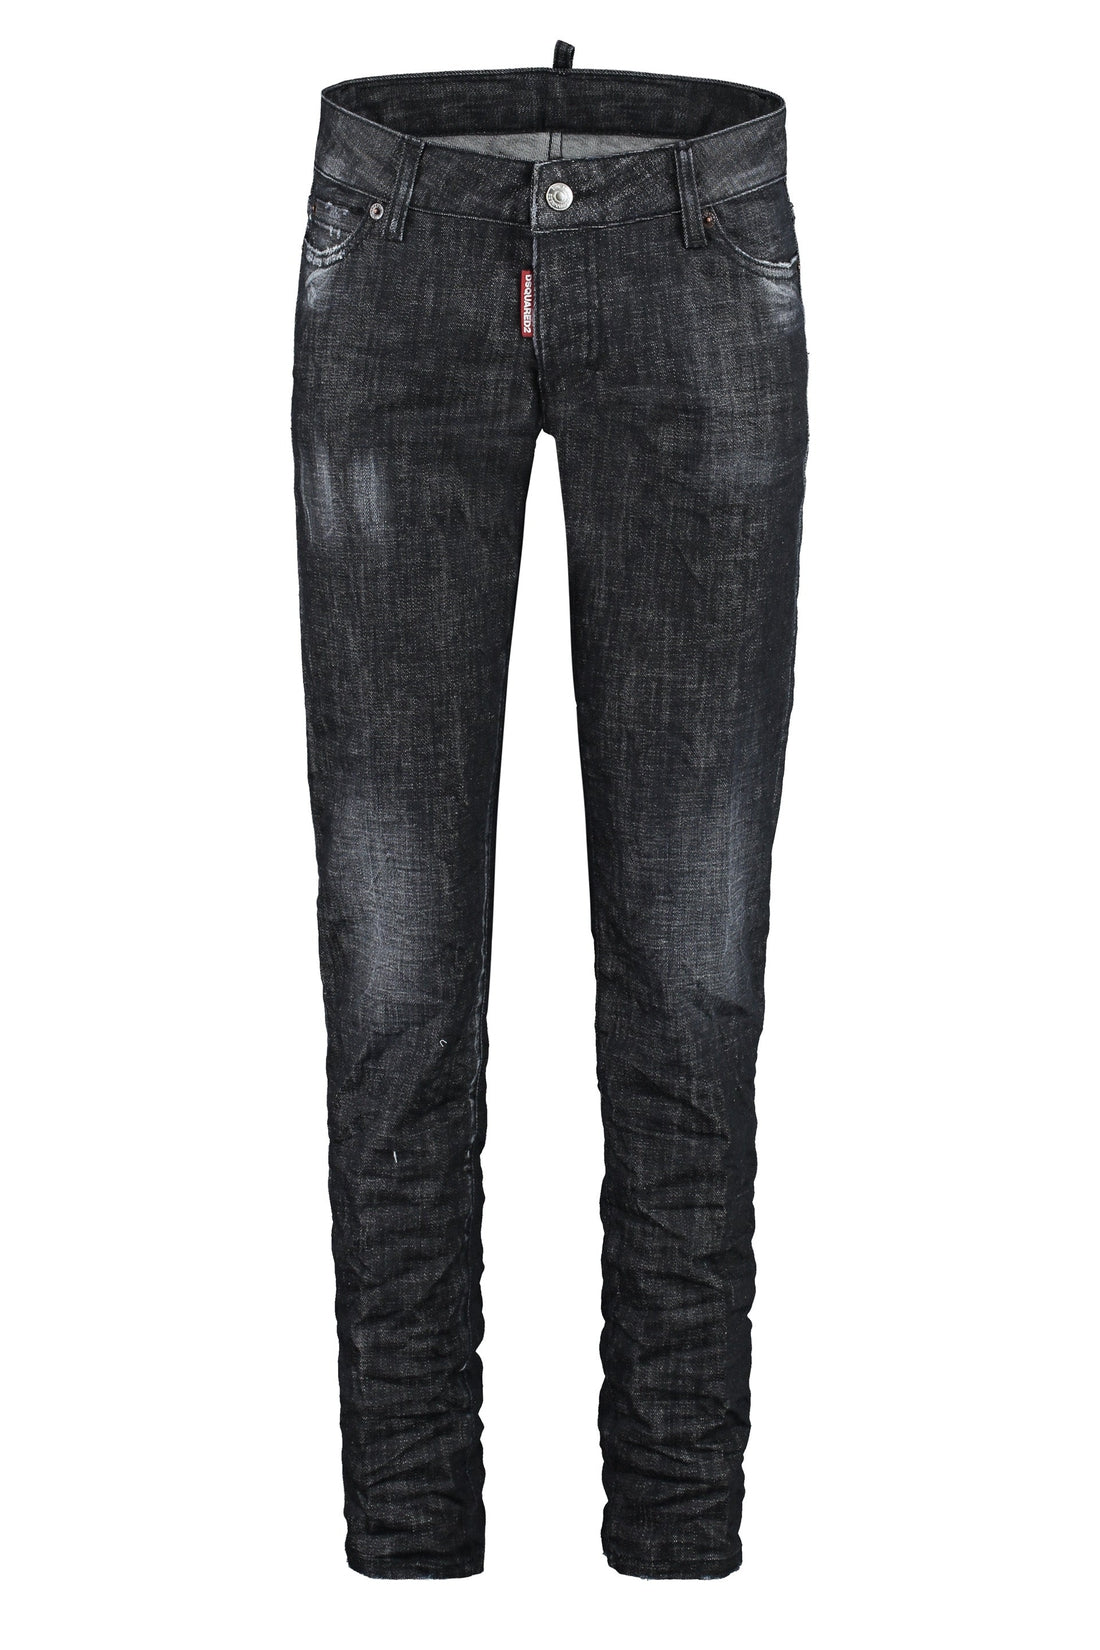 Dsquared2-OUTLET-SALE-Jennifer 5-pocket jeans-ARCHIVIST